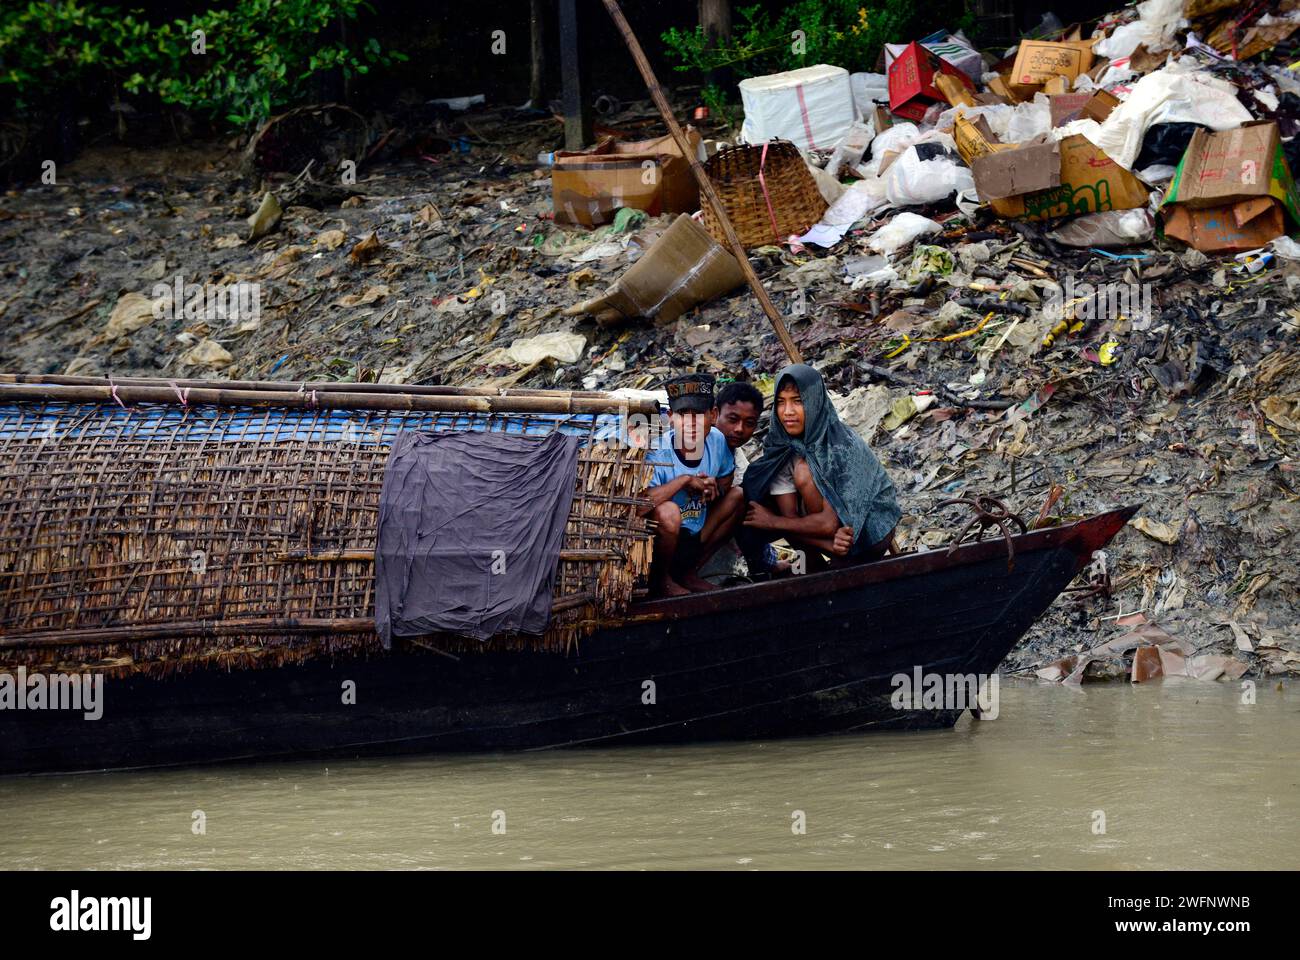 Arakanesen, die während der Monsunsaison Schutz vor dem starken Regen suchen. Kaladan River, Rakhine State, Myanmar. Stockfoto